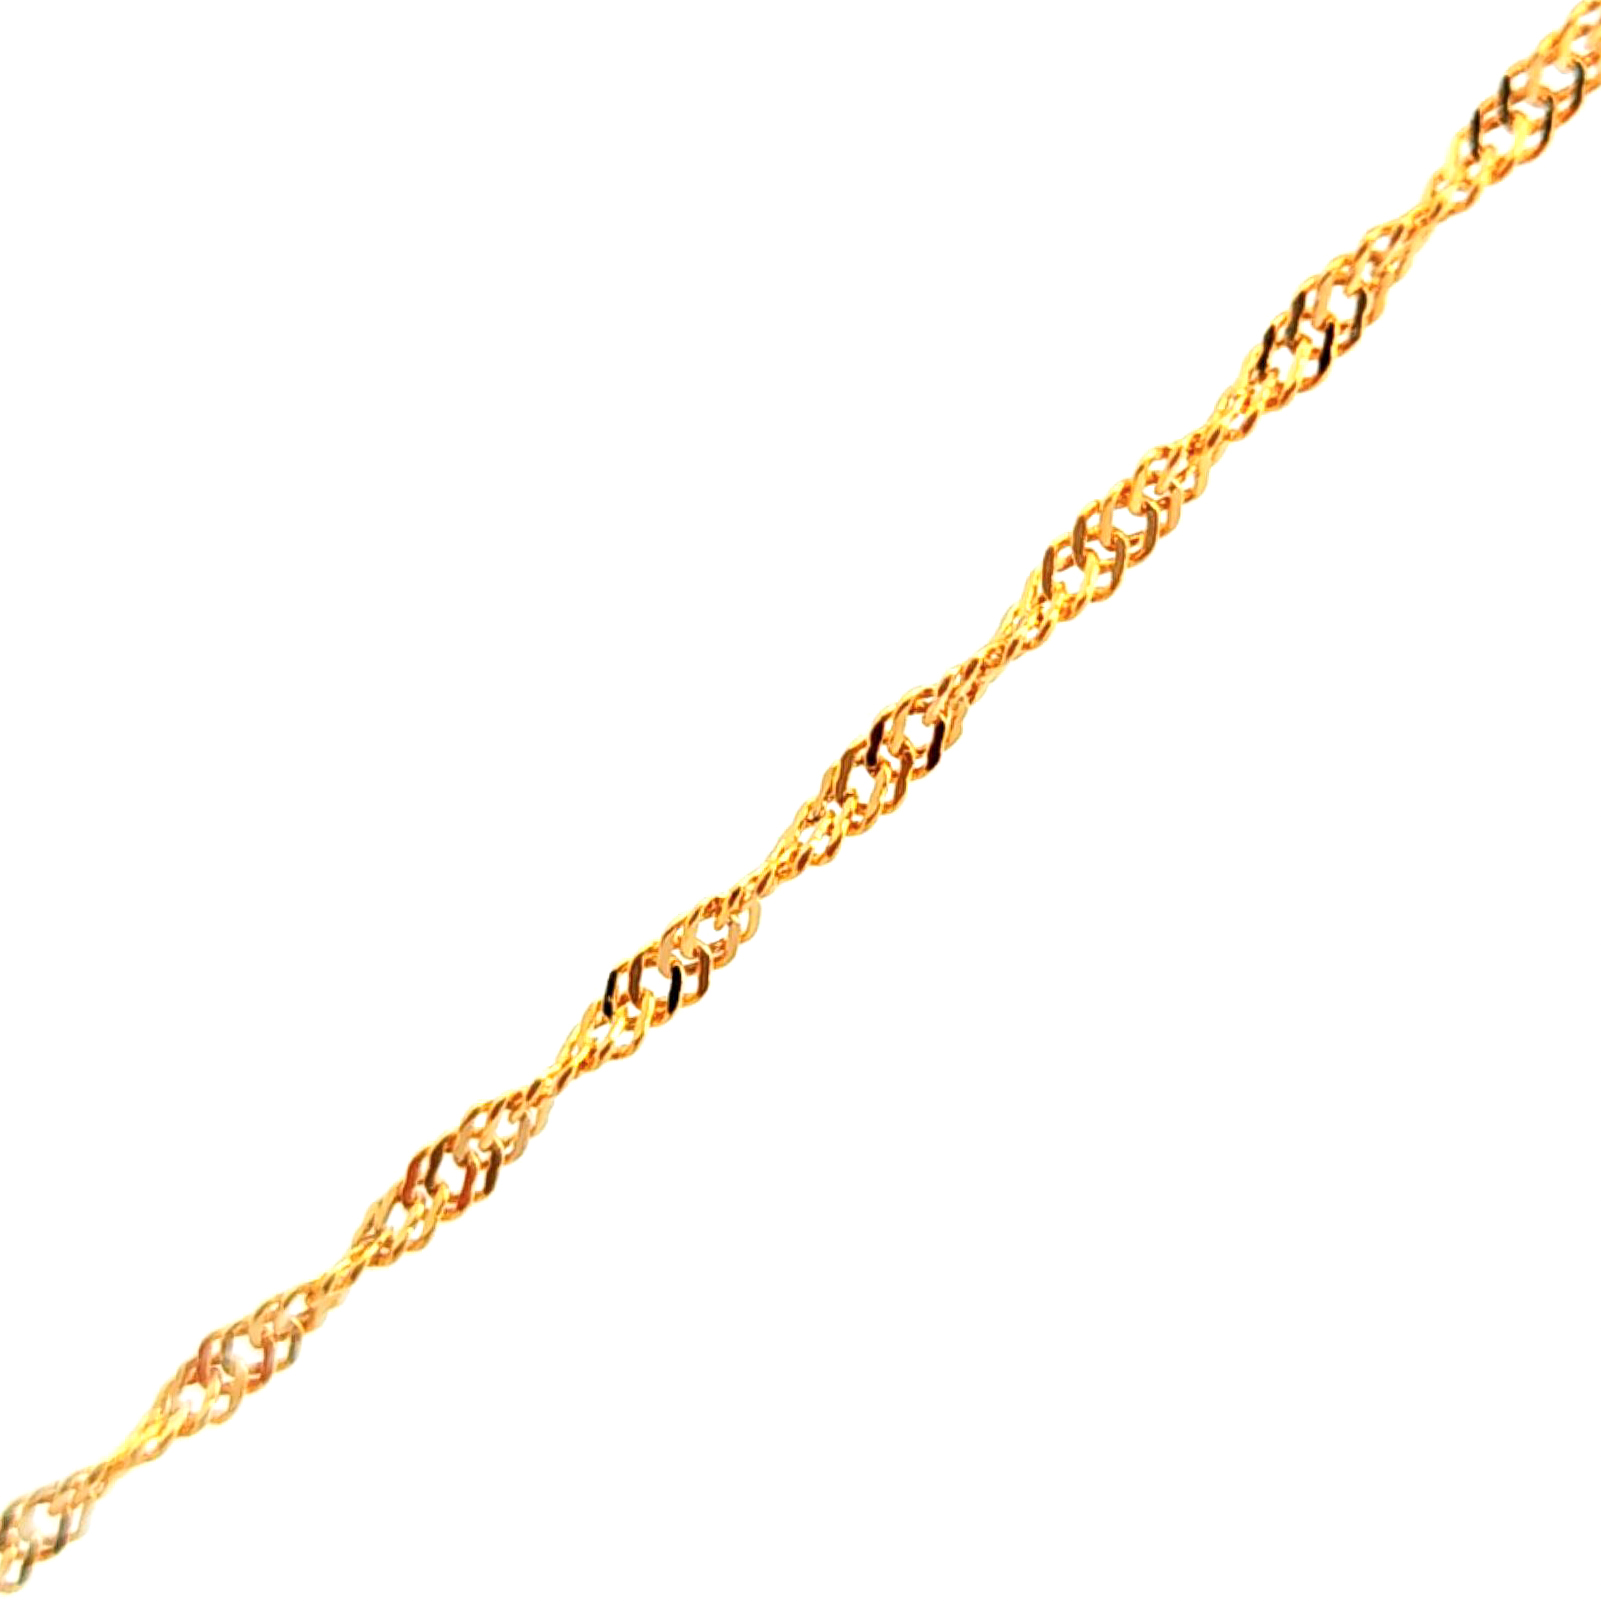 Cadena de oro amarillo 18k de eslabones cruzados 2mm medida 44 cm, peso 1,63 gr 2